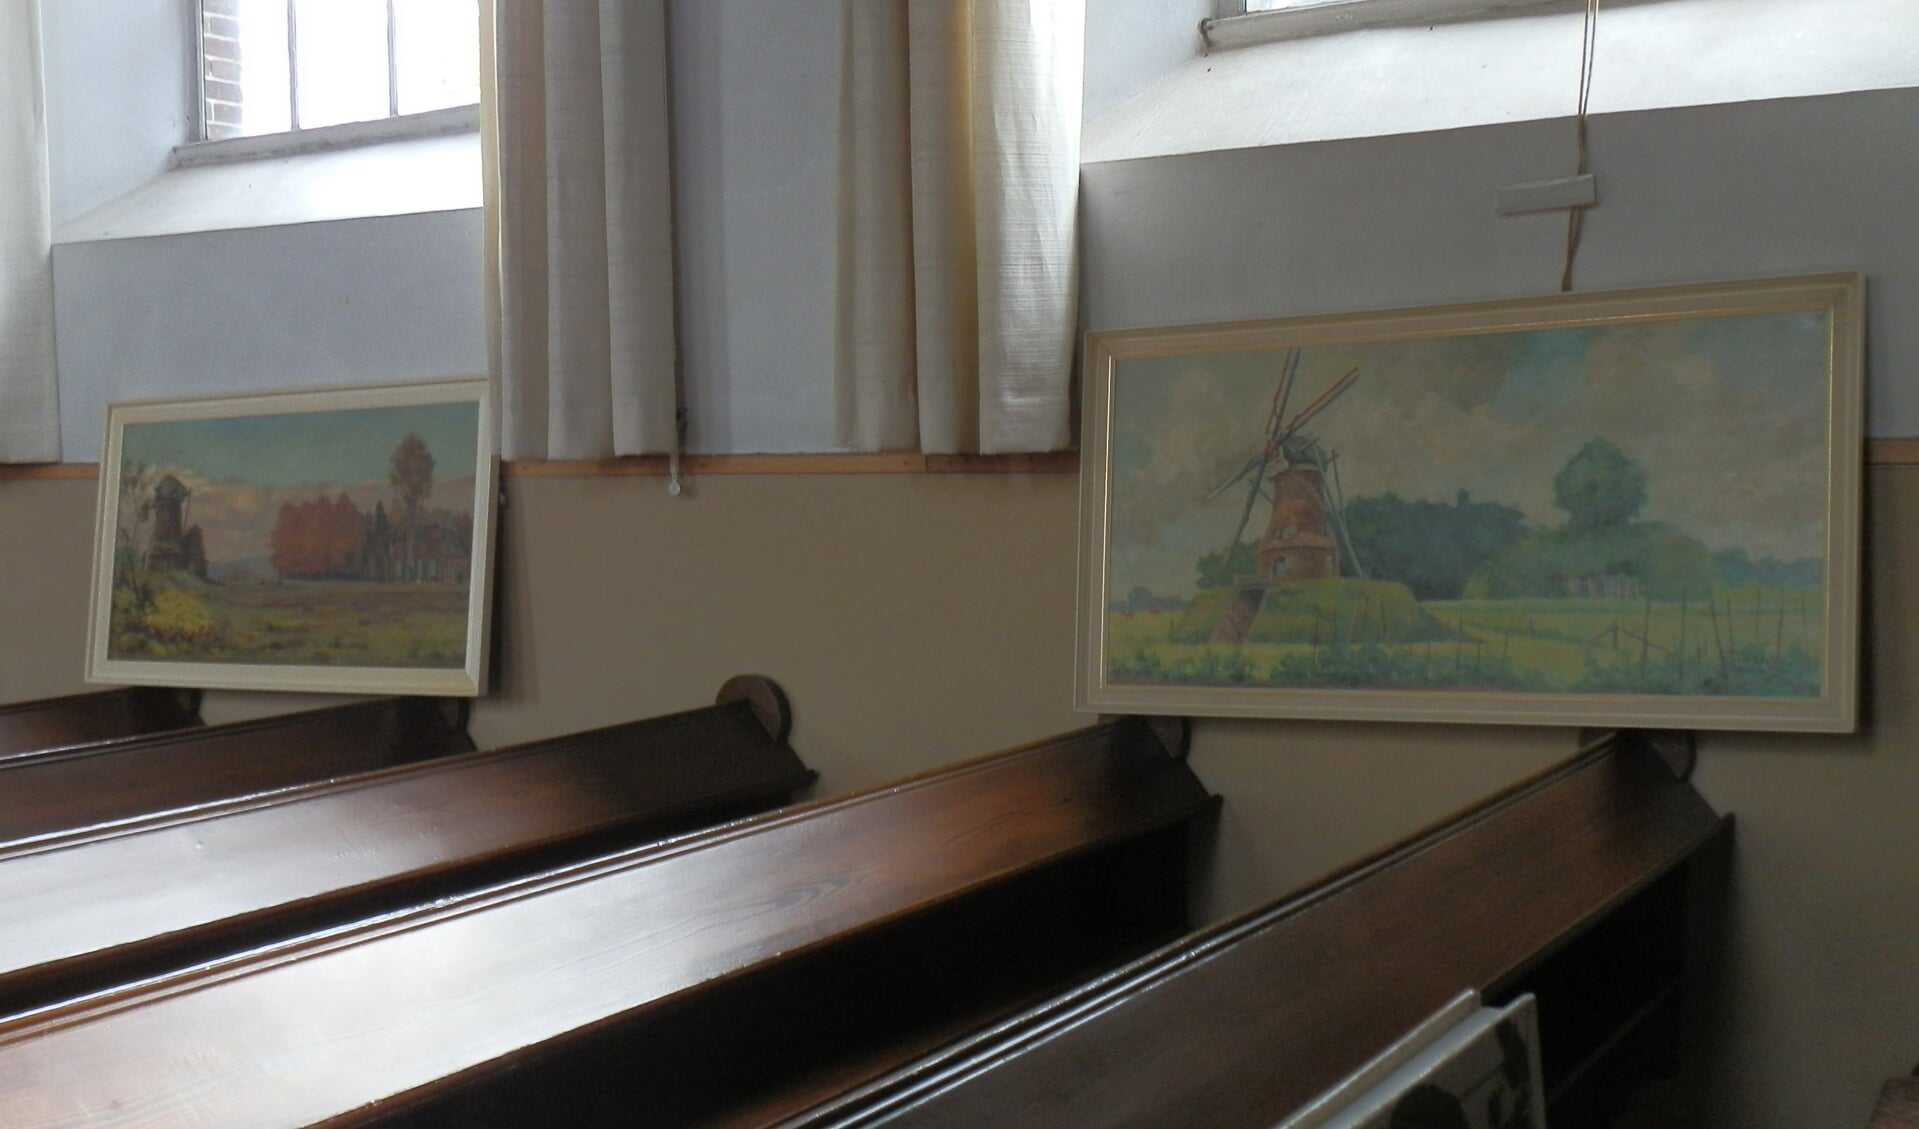 De werken van Piet te Lintum waarop de Rekkense Piepermolen is afgebeeld. Foto: PR